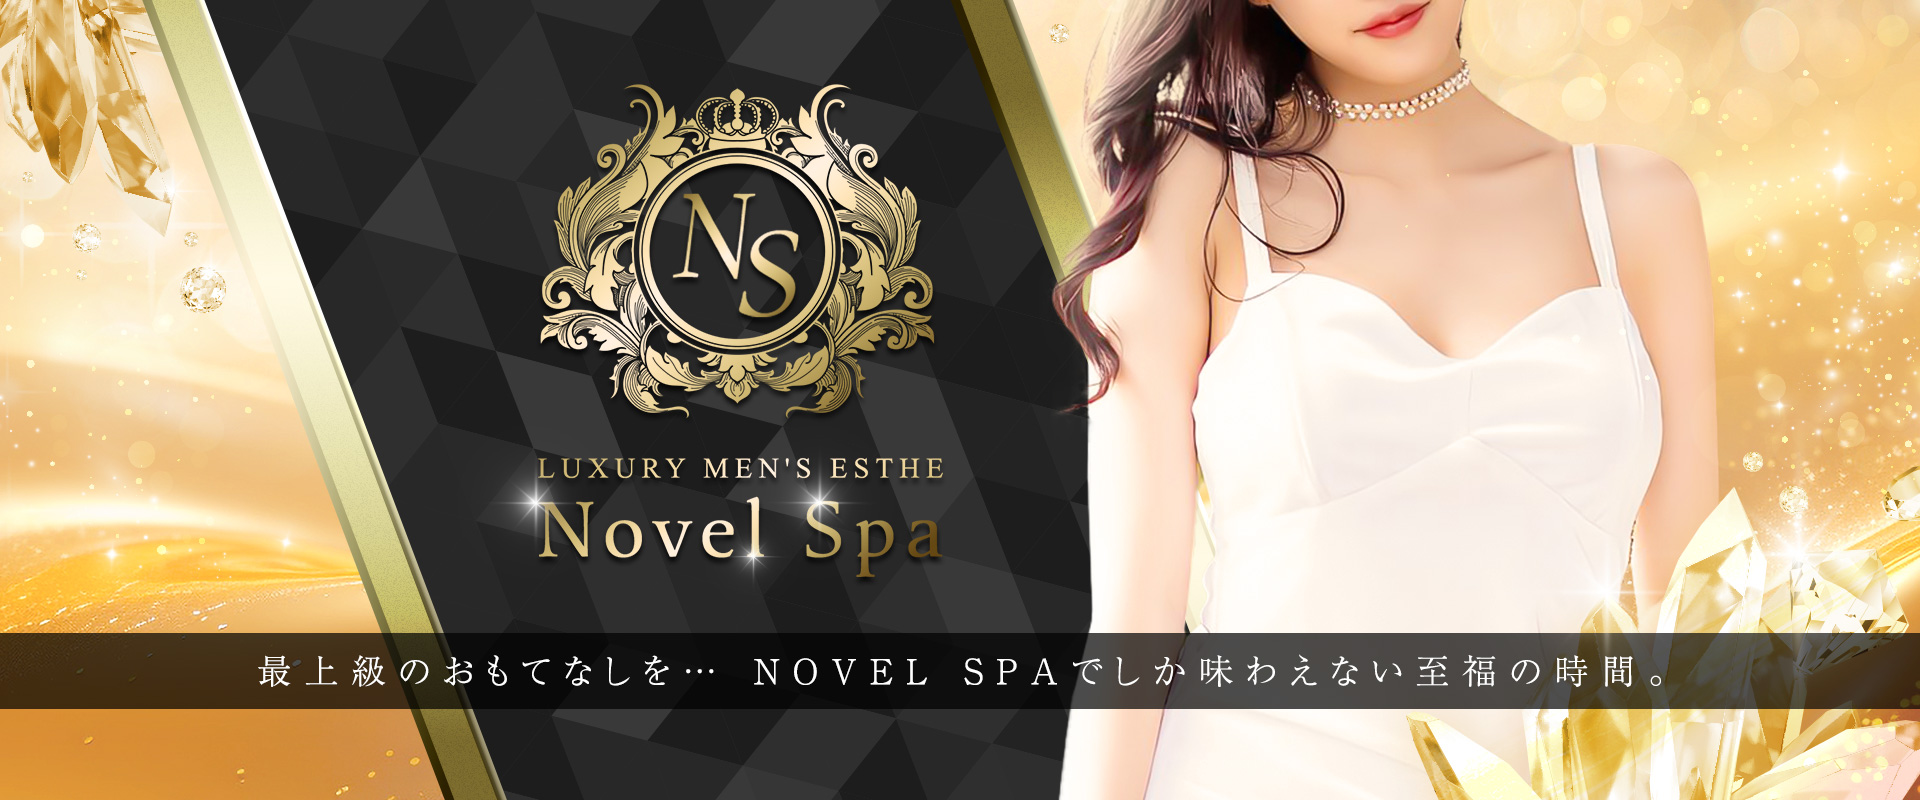 Novel Spa